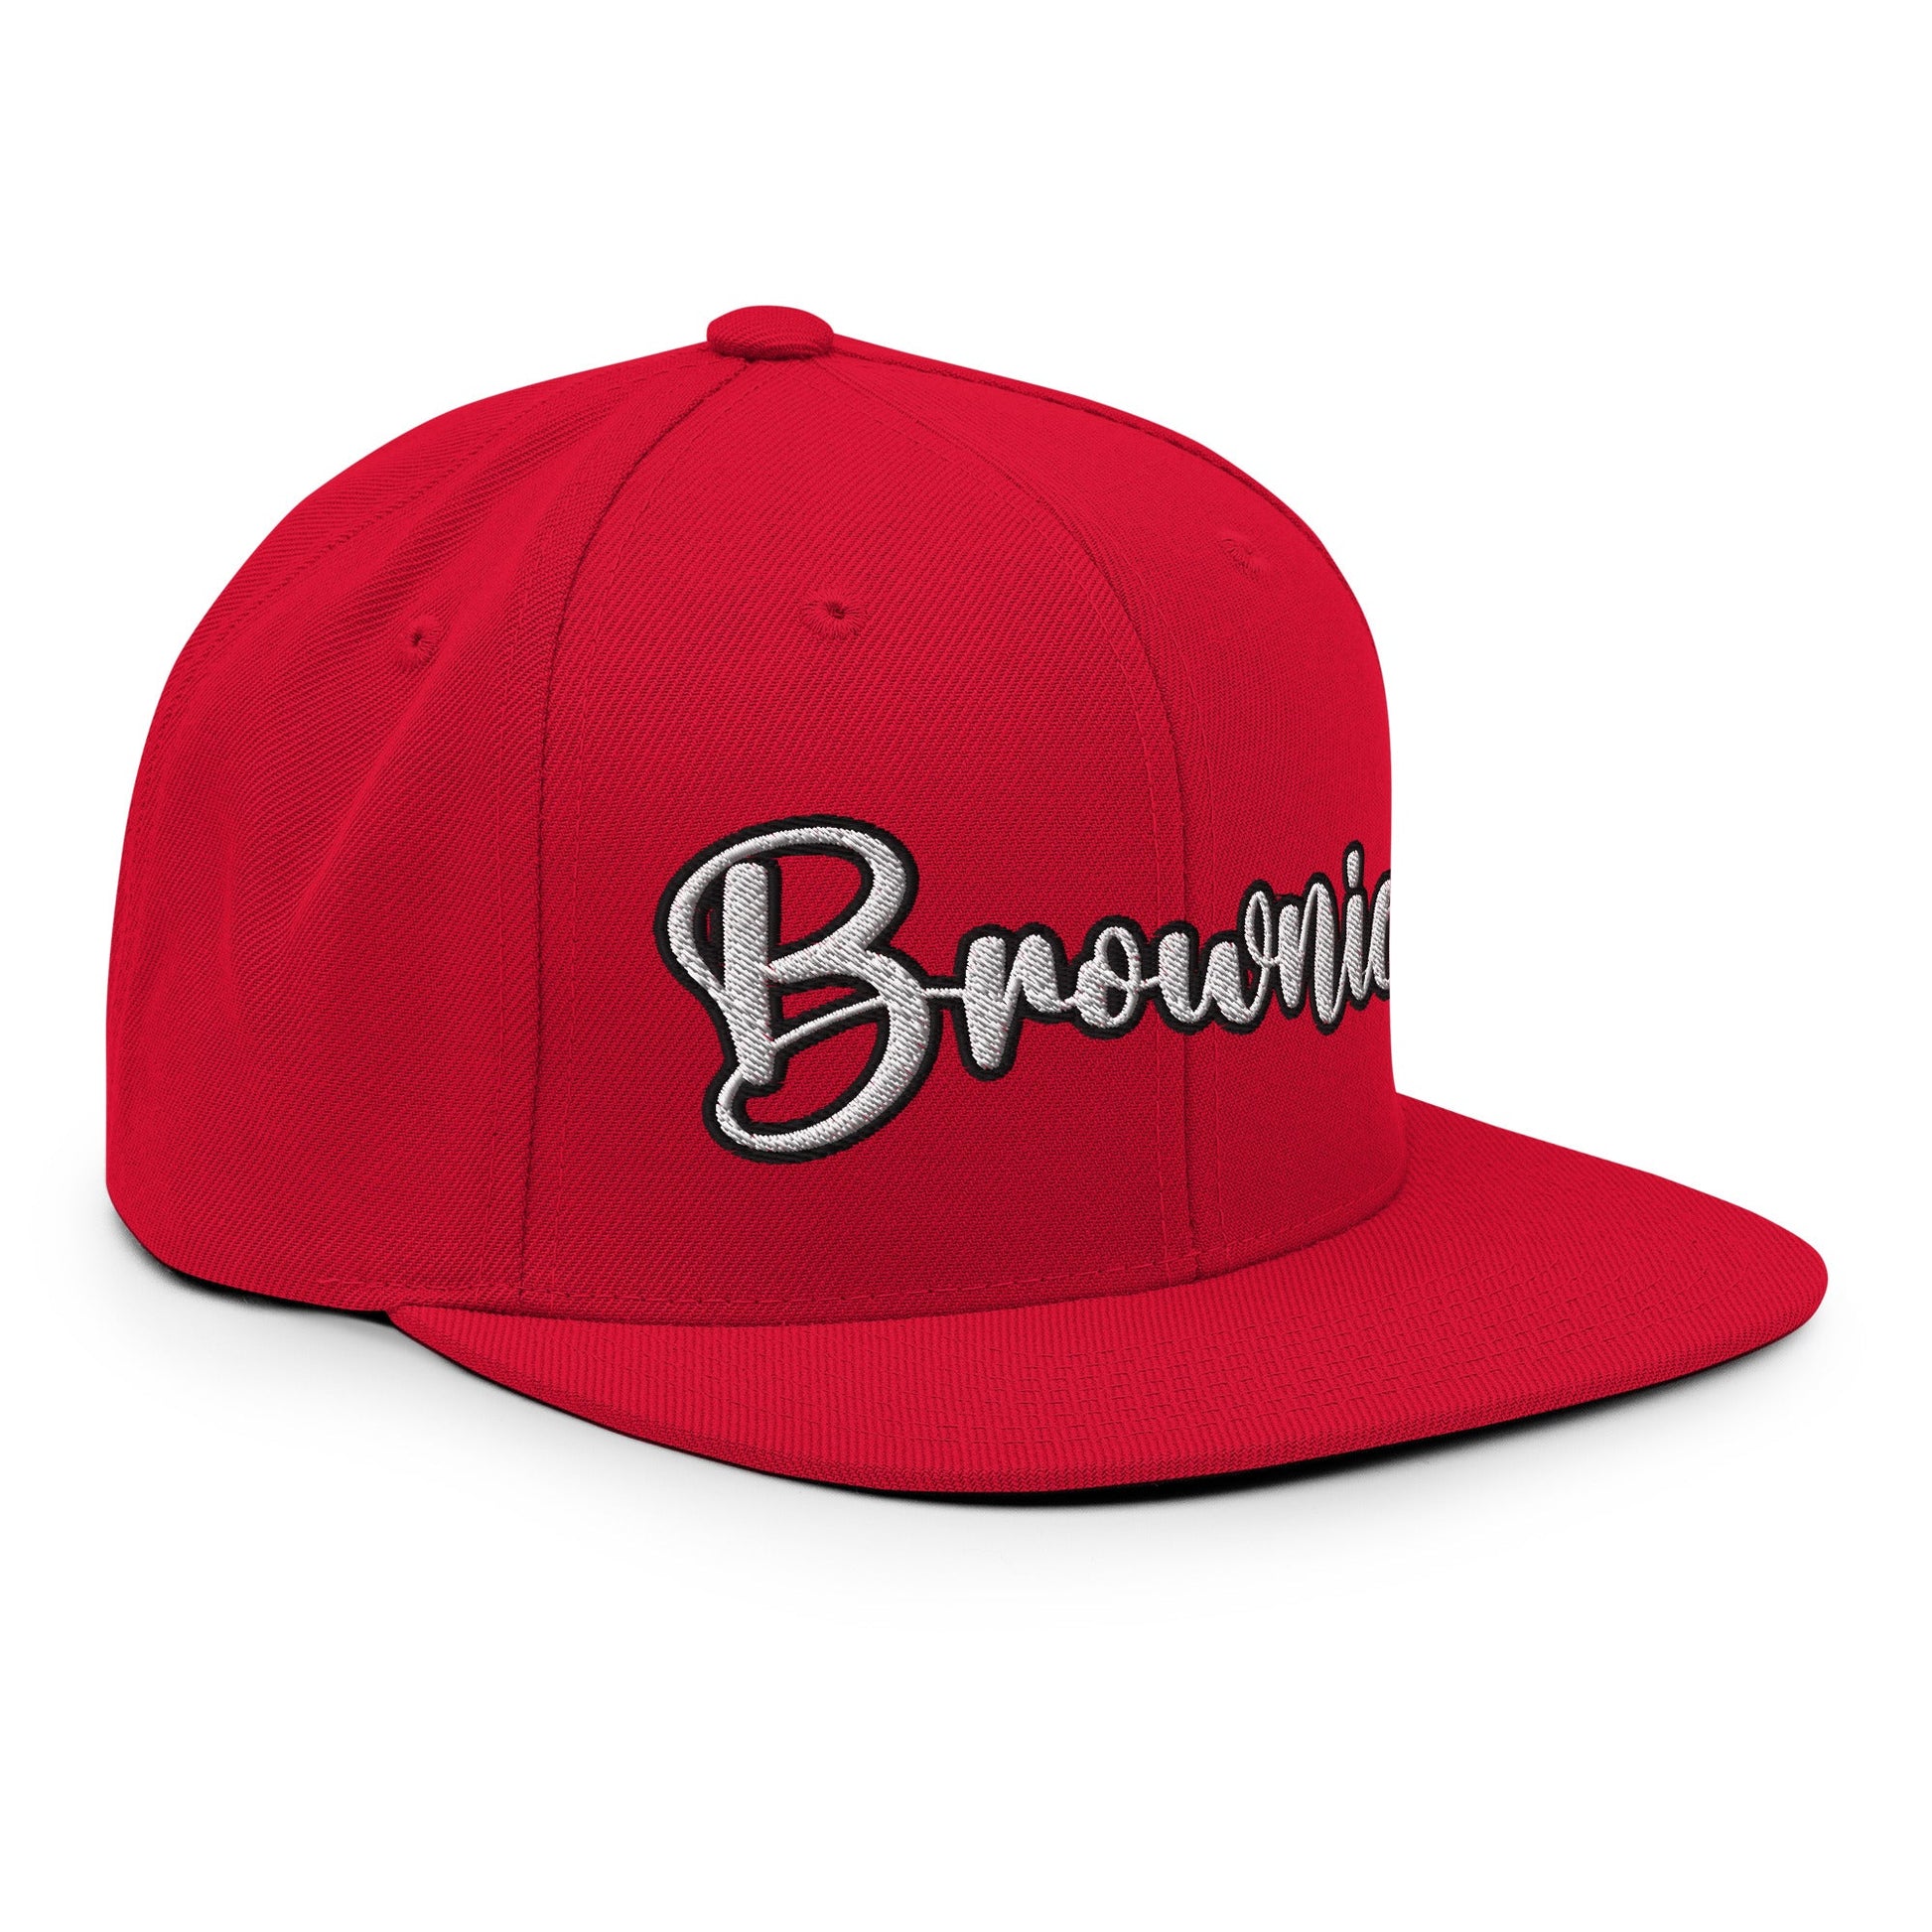 Brownies Script Snapback Hat Red